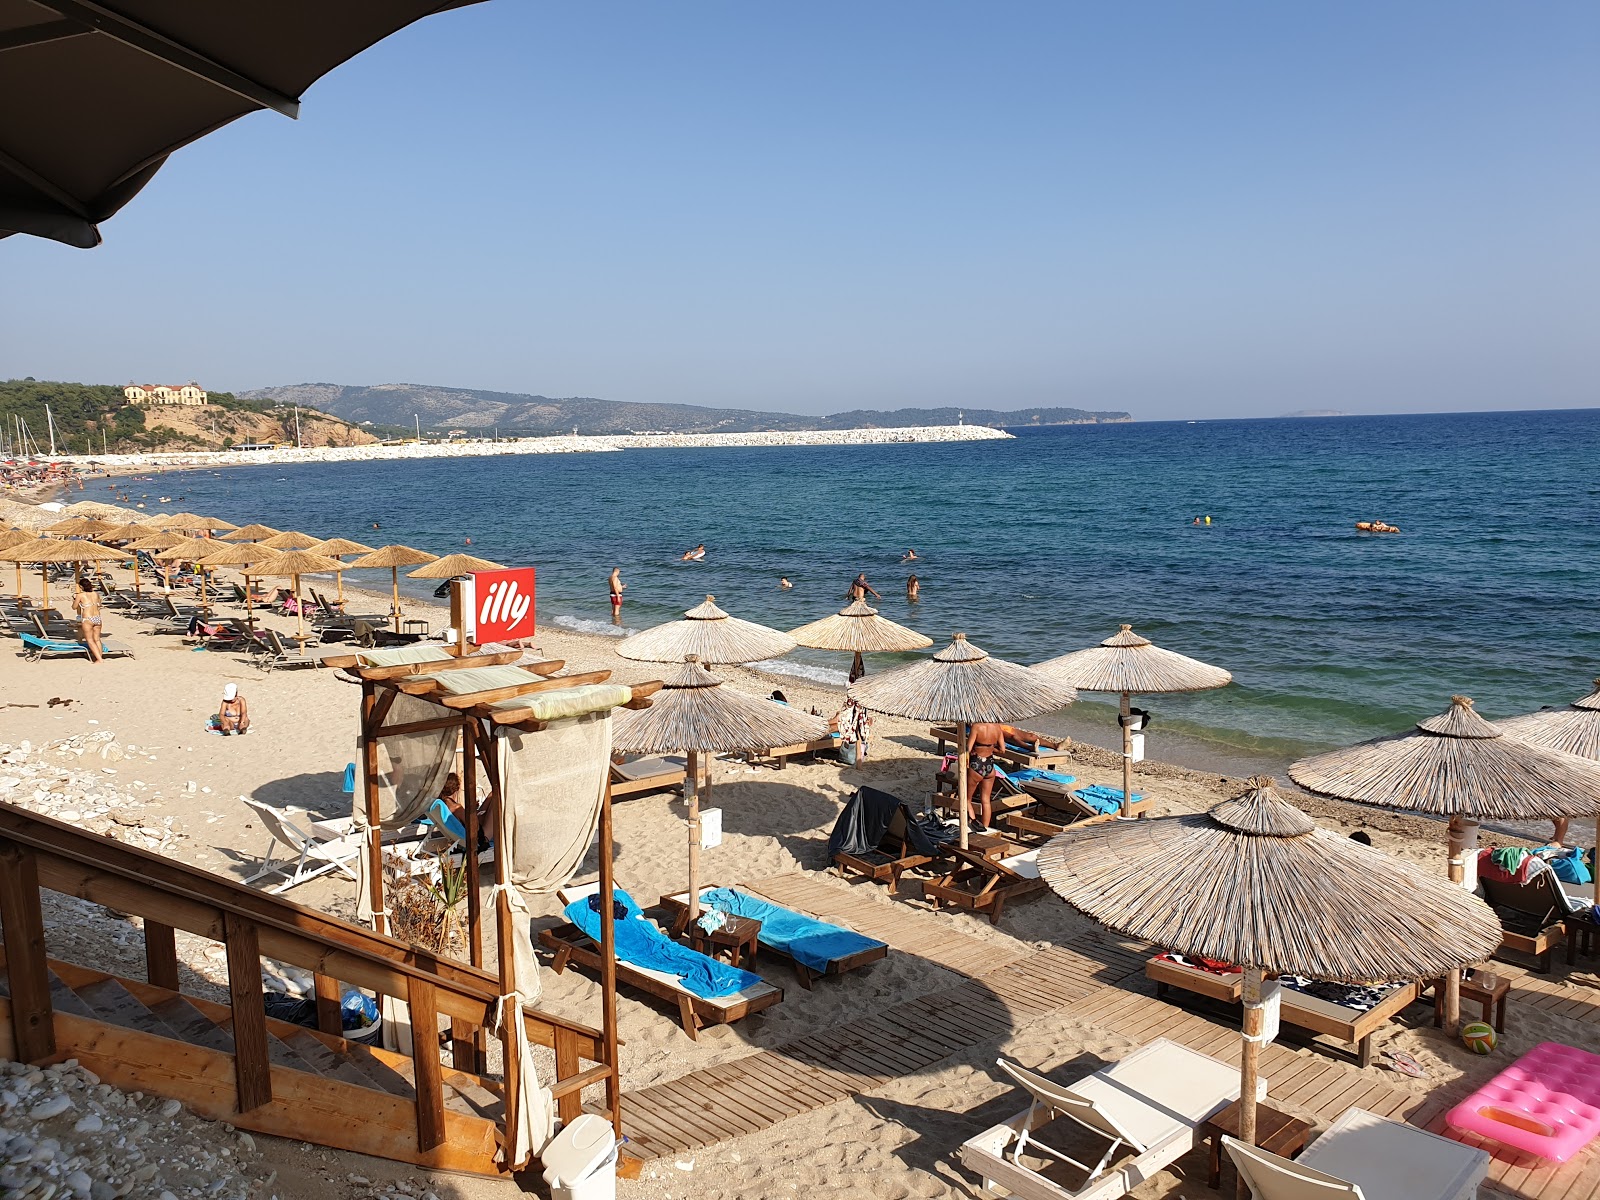 Foto af Aegean beach og bosættelsen